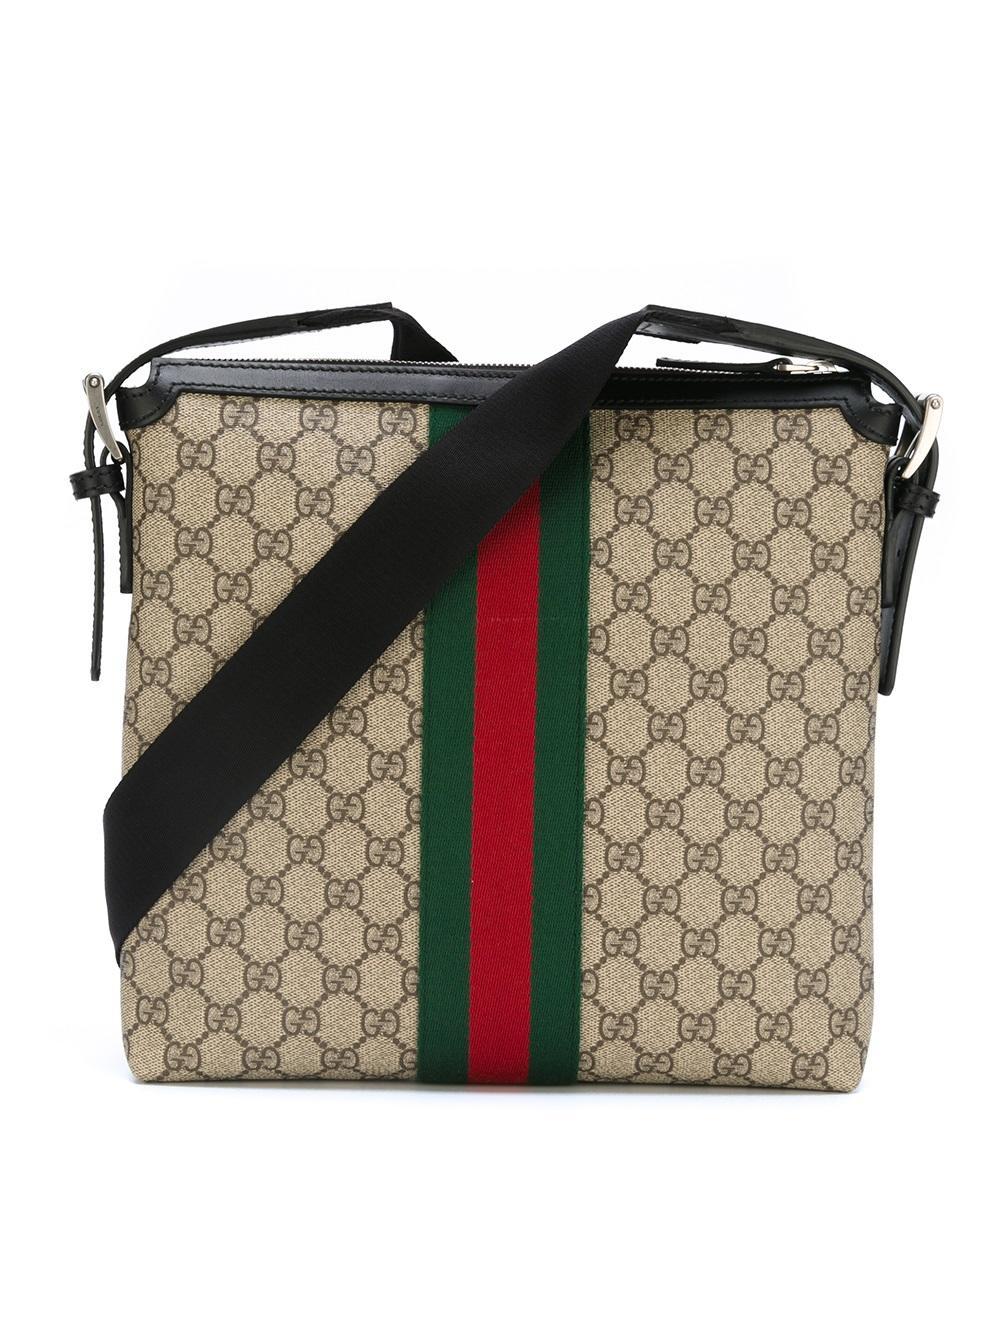 Ebay Official Site Gucci Bags | semashow.com